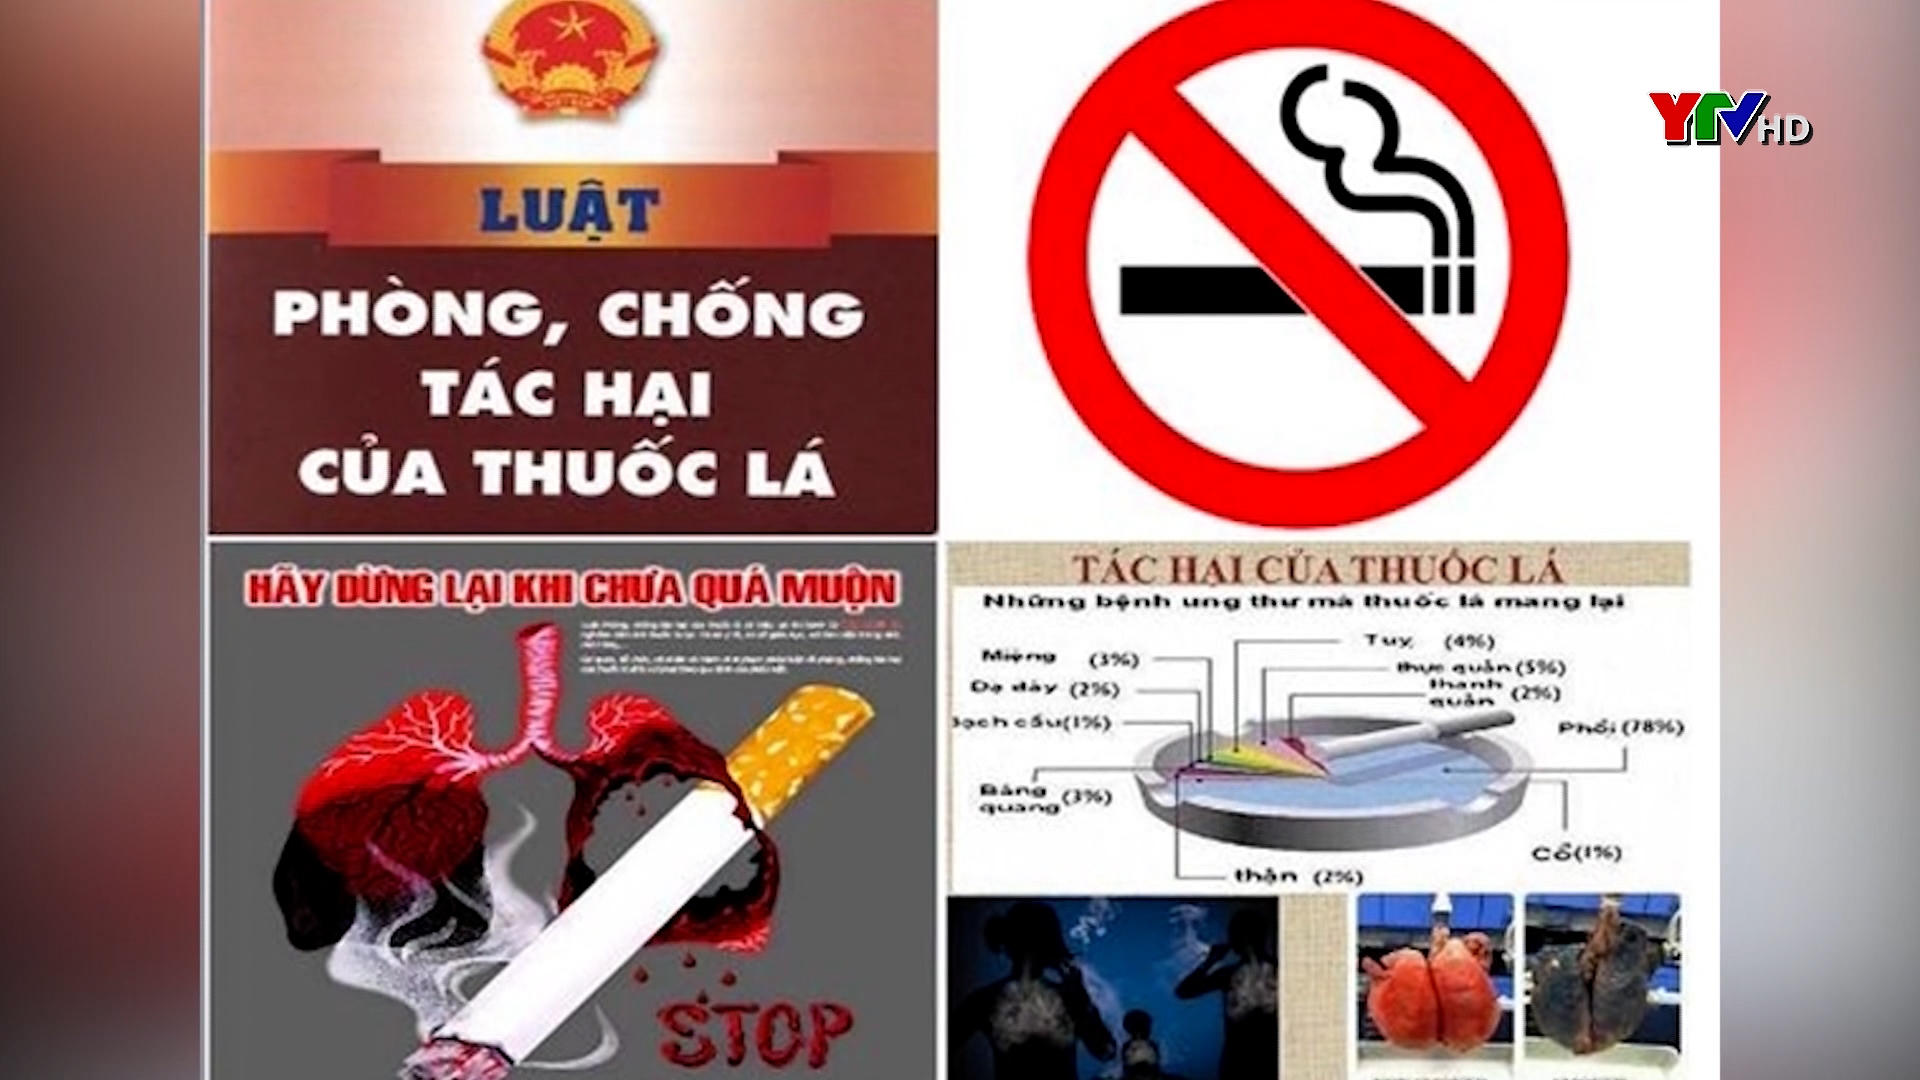 Nâng cao nhận thức của người dân về phòng, chống tác hại của thuốc lá